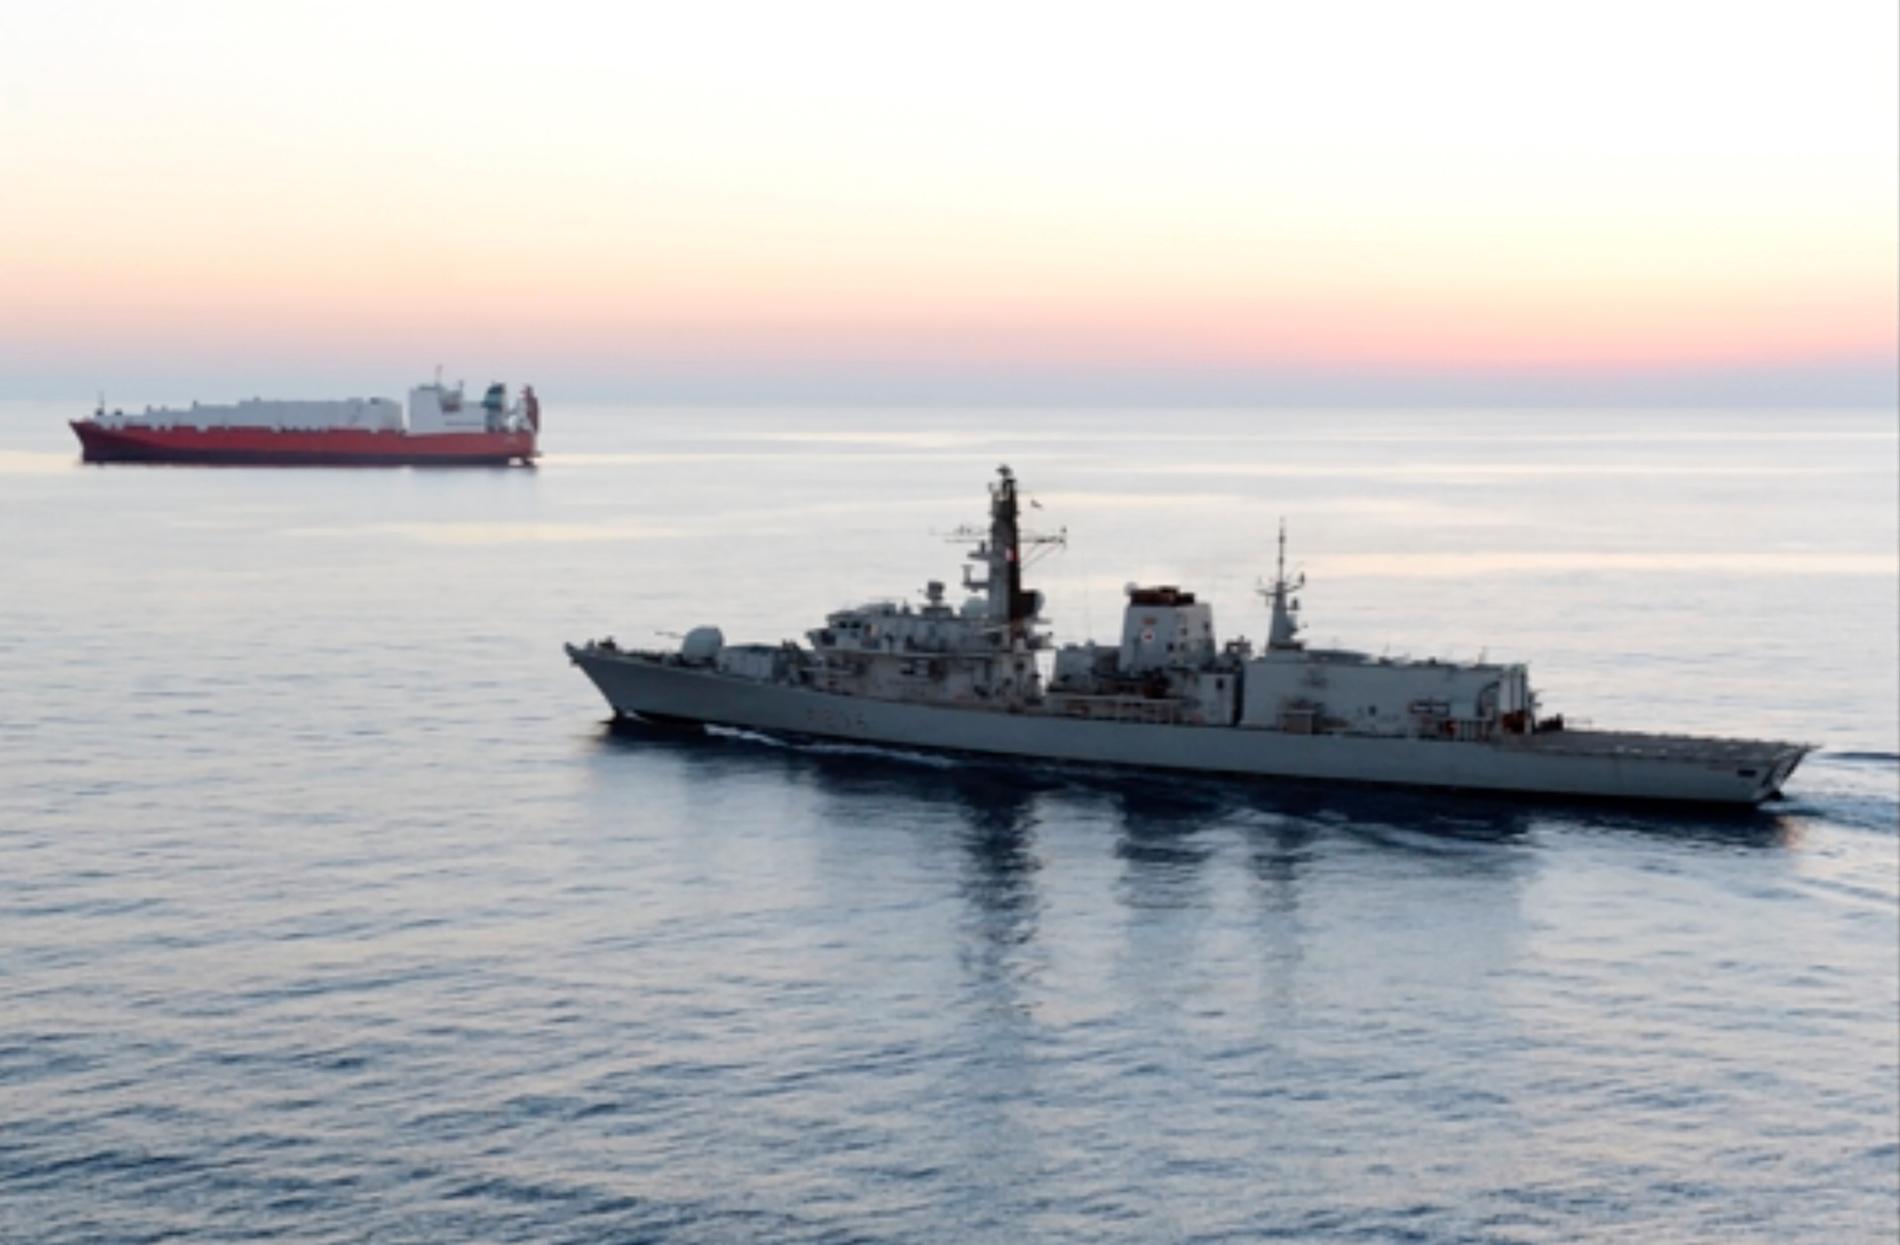 Fartyget HMS Montrose från den brittiska flottan ingrep för att förhindra beslagtagandet av oljetankern, enligt den brittiska regeringen. Arkivbild på fartyget från 2014.